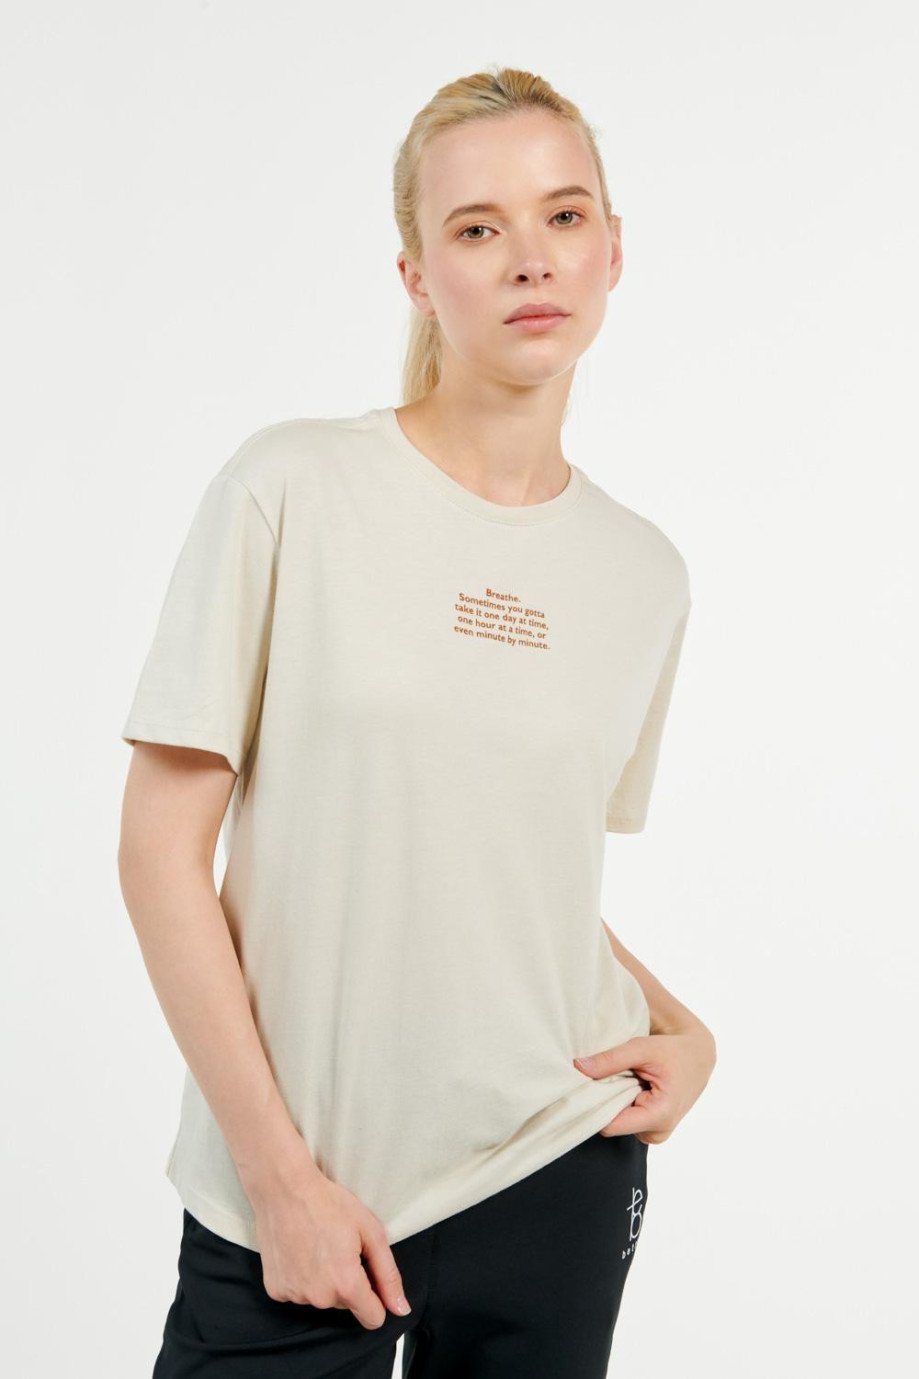 Camiseta manga corta kaki con diseño minimalista de letras